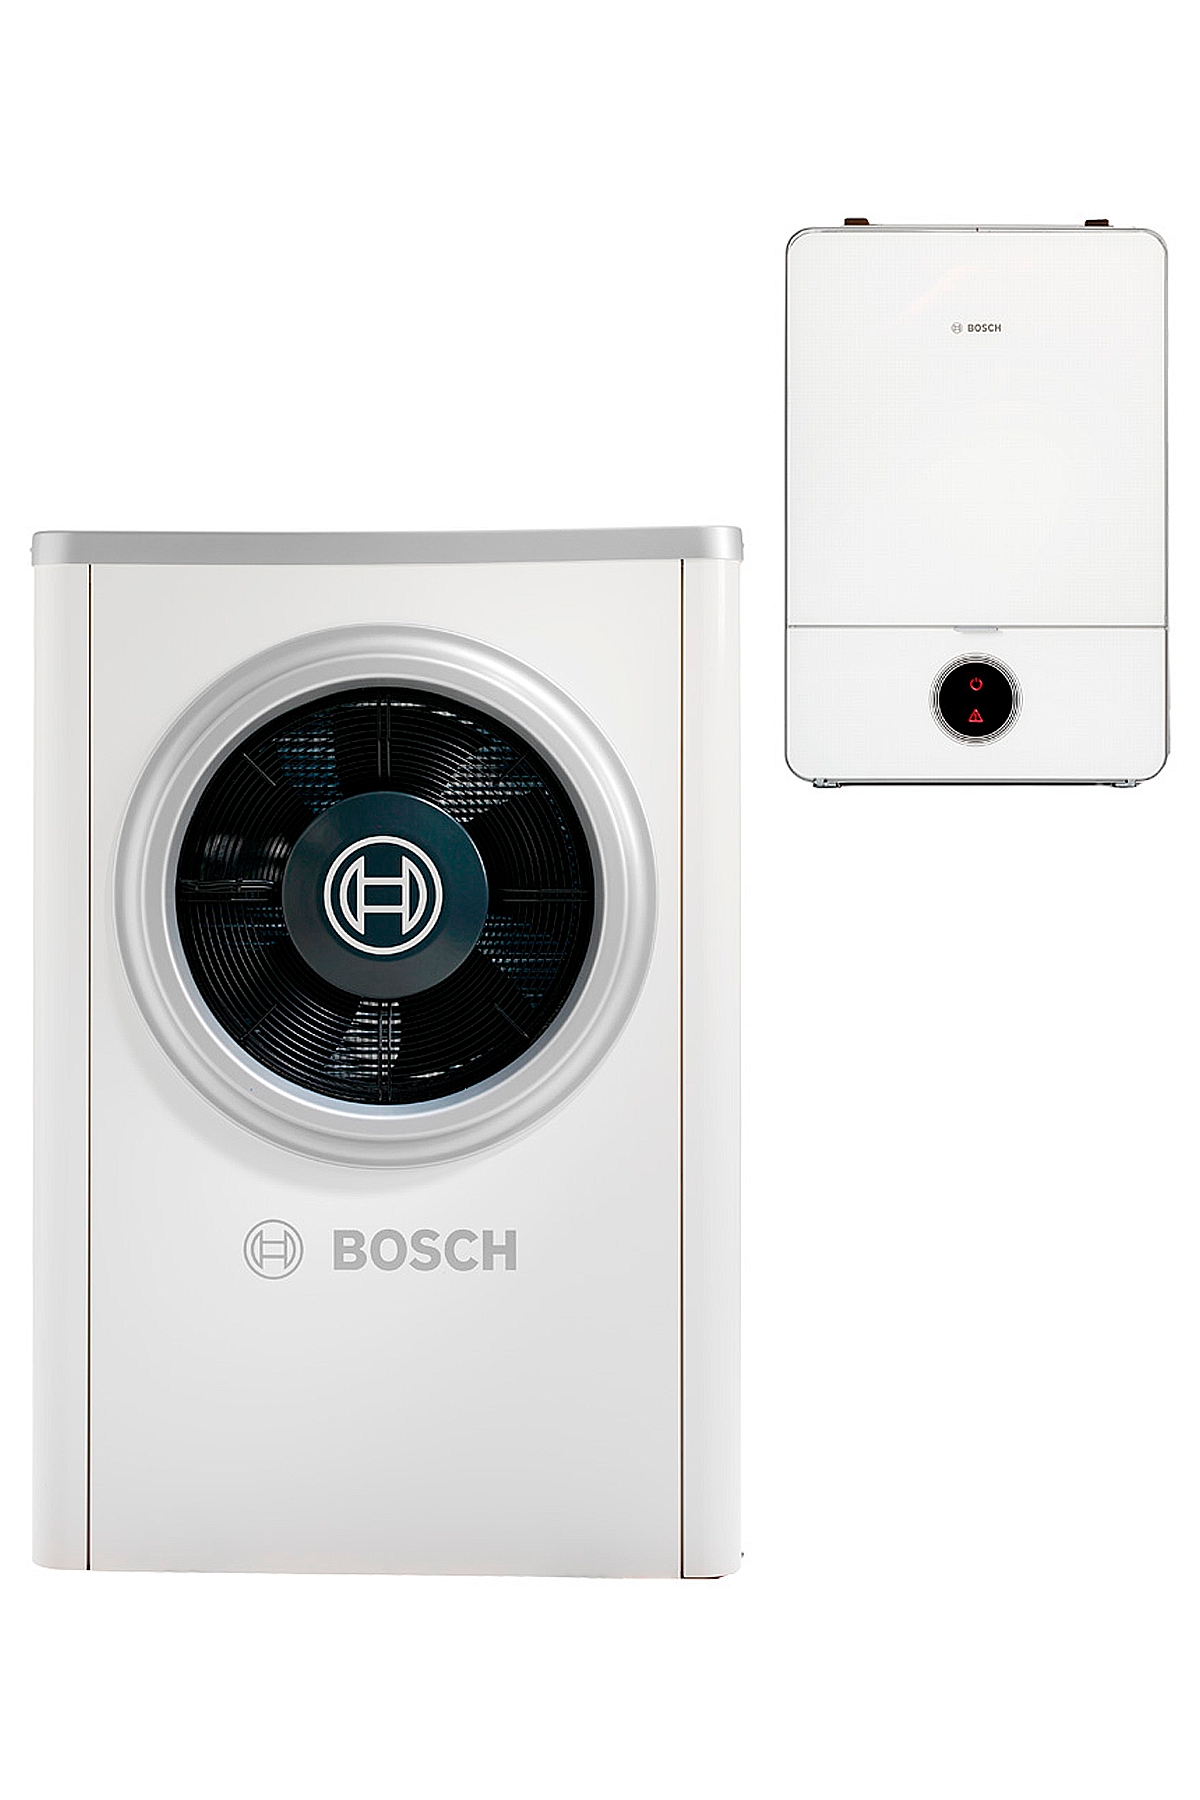 Цена тепловой насос Bosch Compress 7000i AW 7 B в Киеве